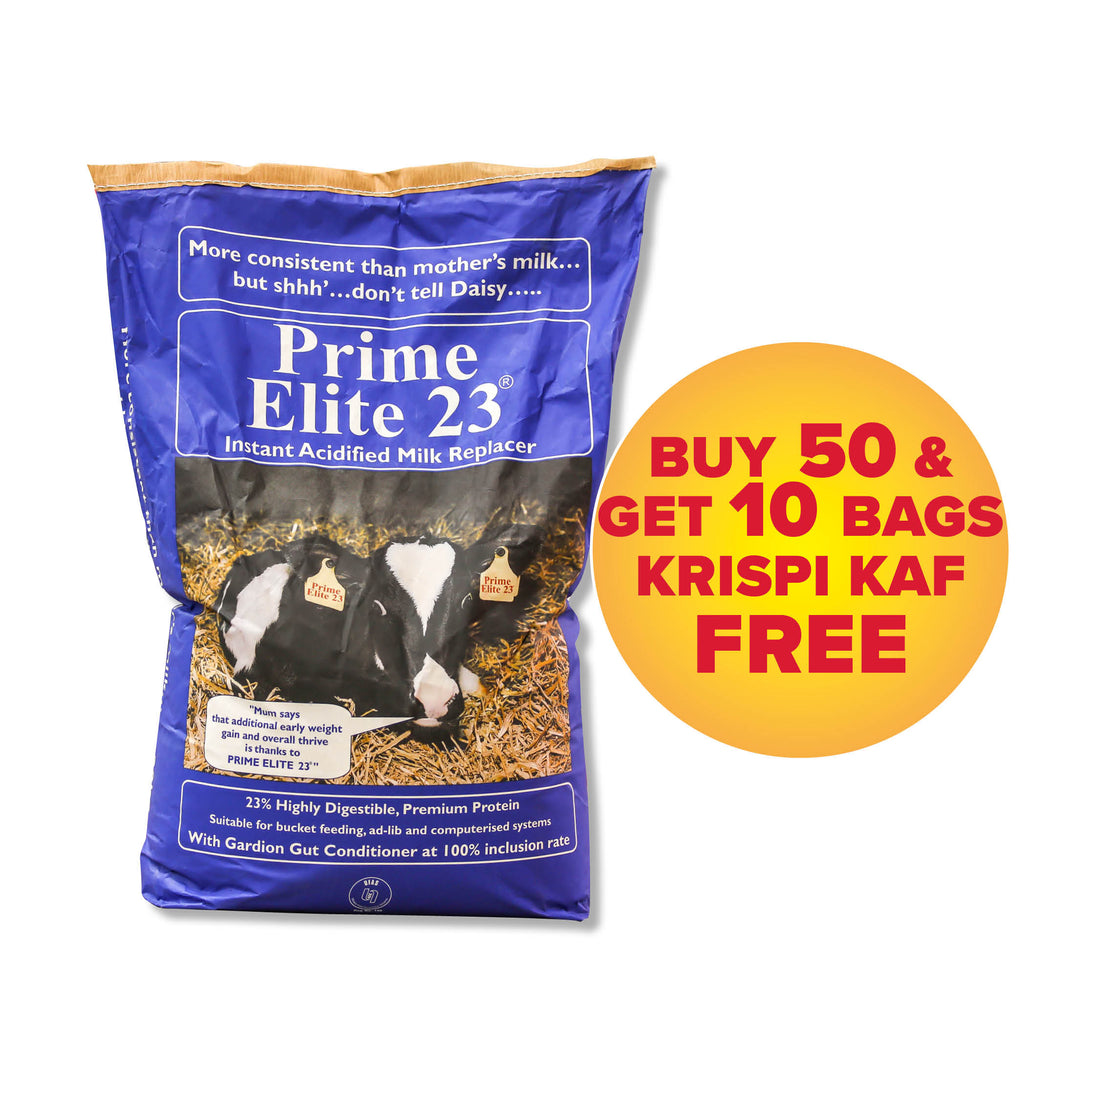 Prime Elite 23 Milk Replacer 20kg -  Buy 50 and Get 10 Bags Krispi Kaf FREE